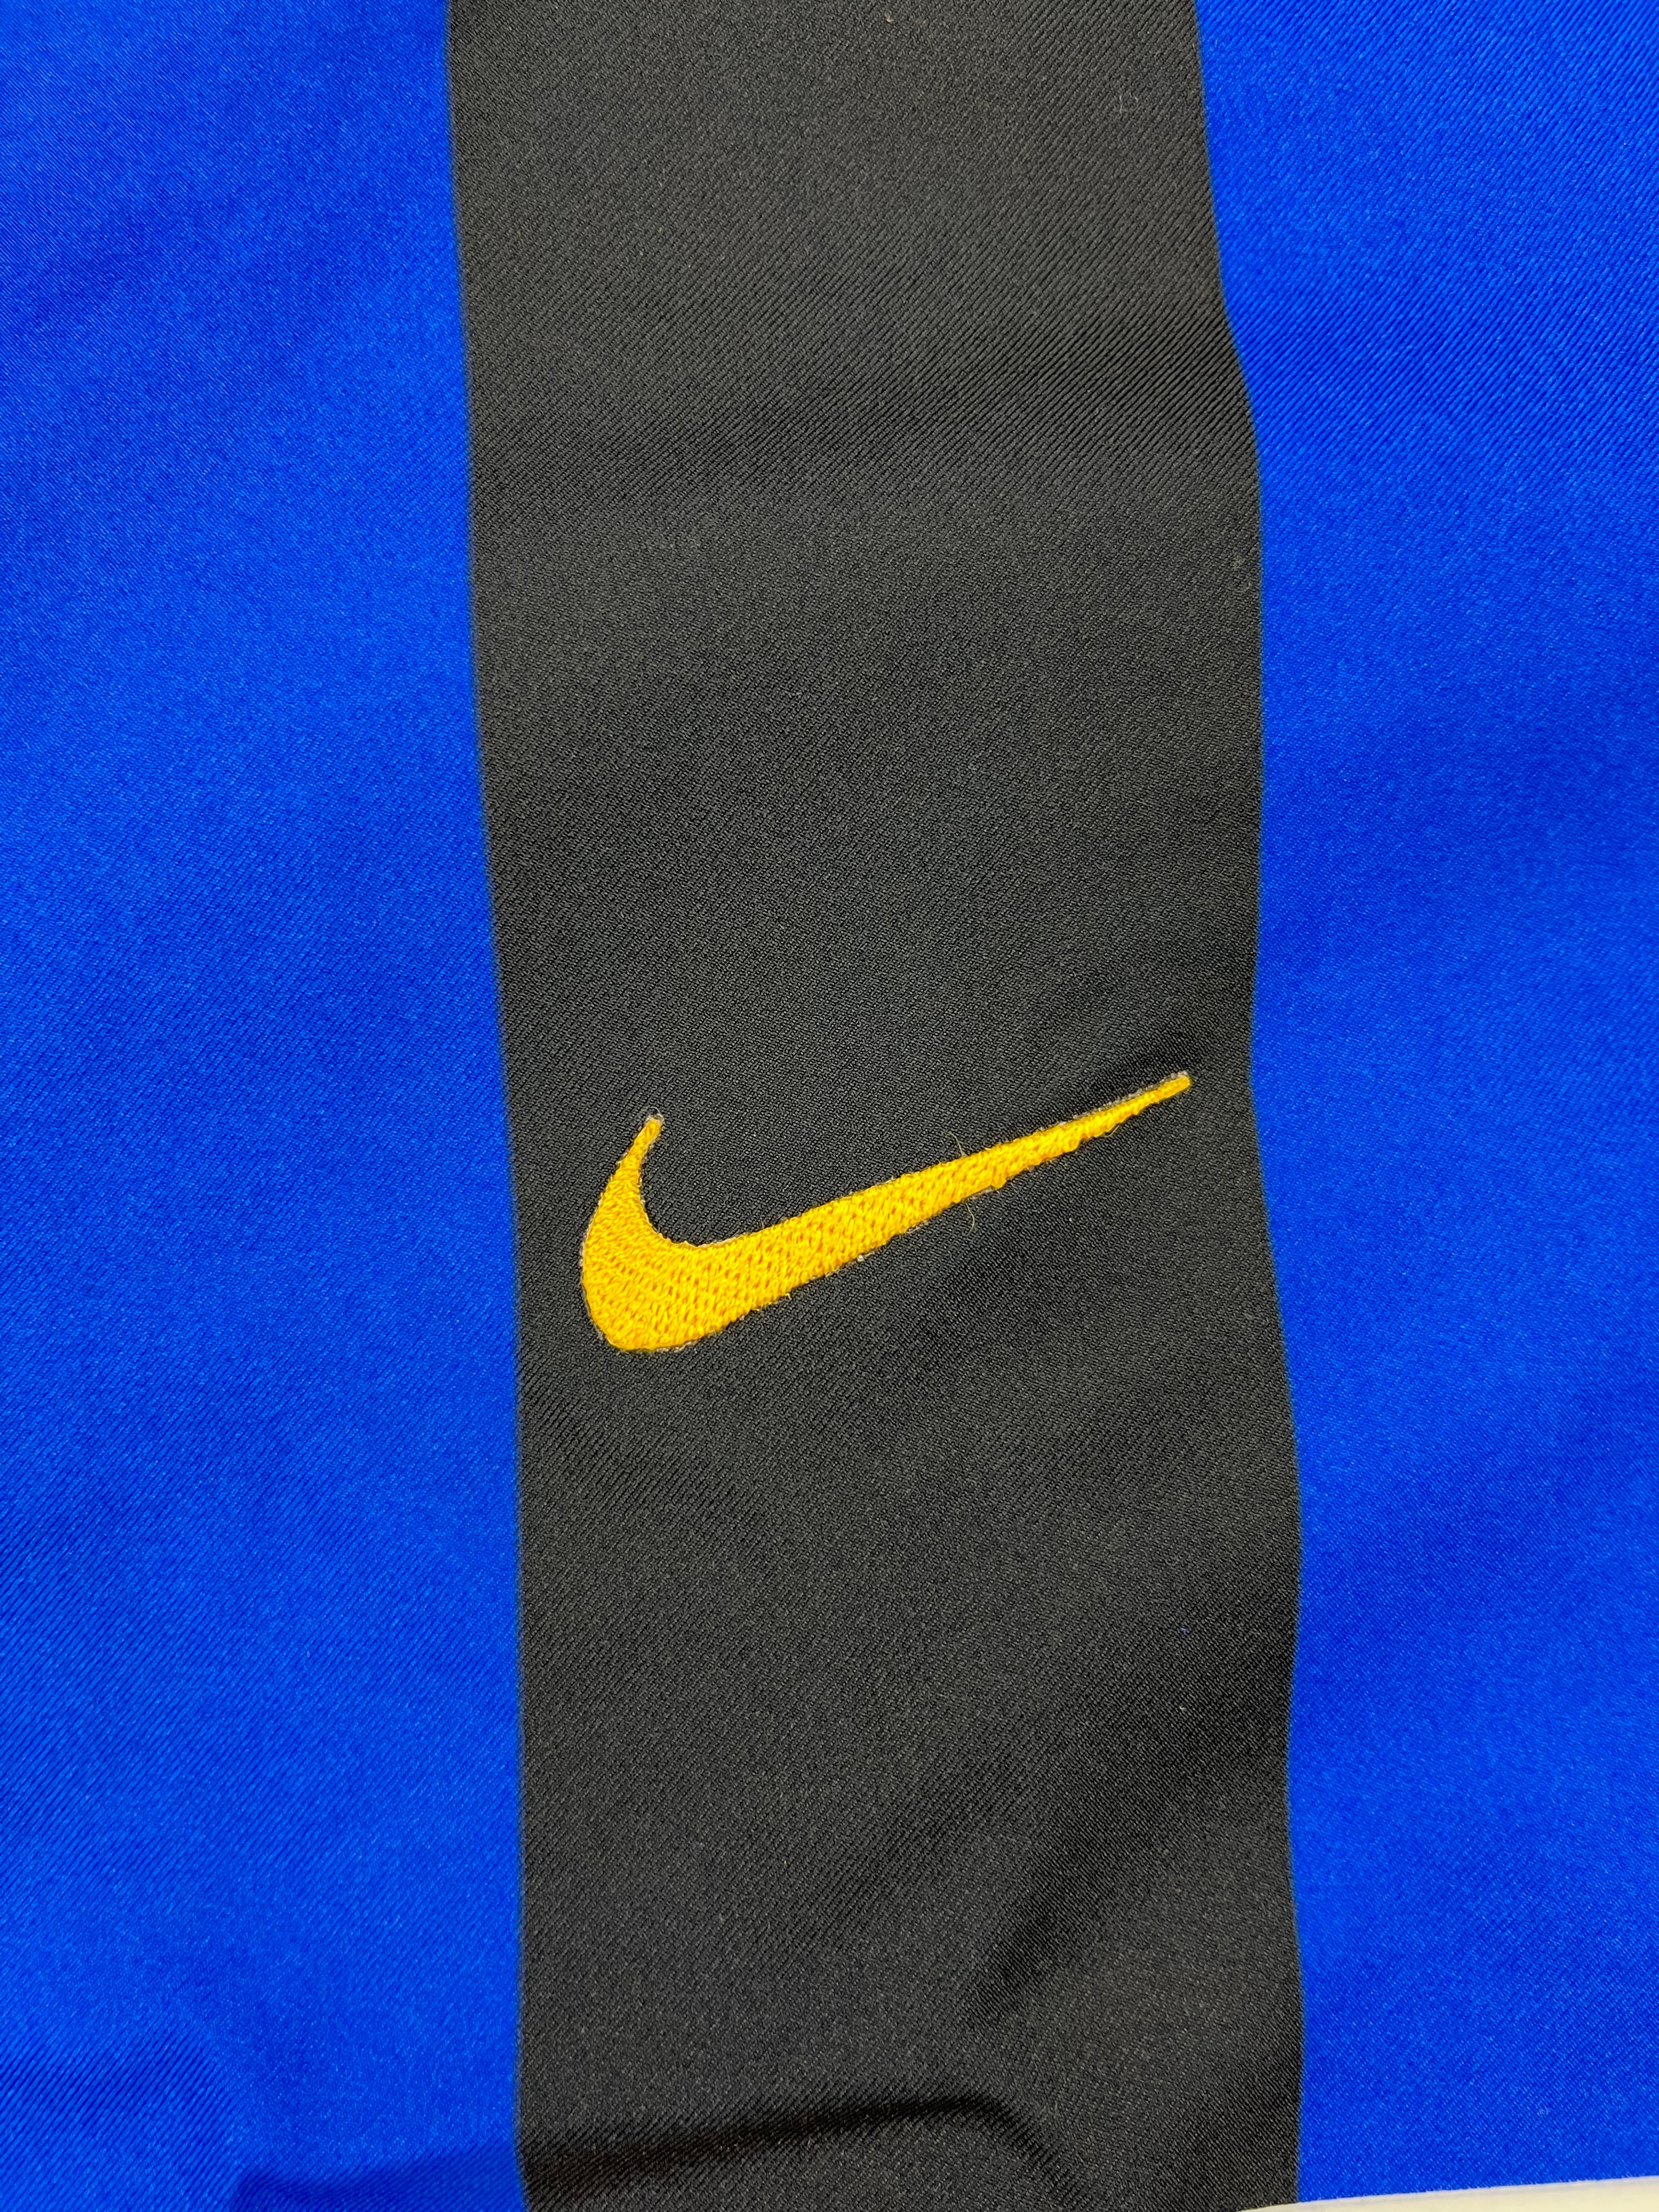 Camiseta de local del Inter de Milán 2002/03 (XXL) BNWT